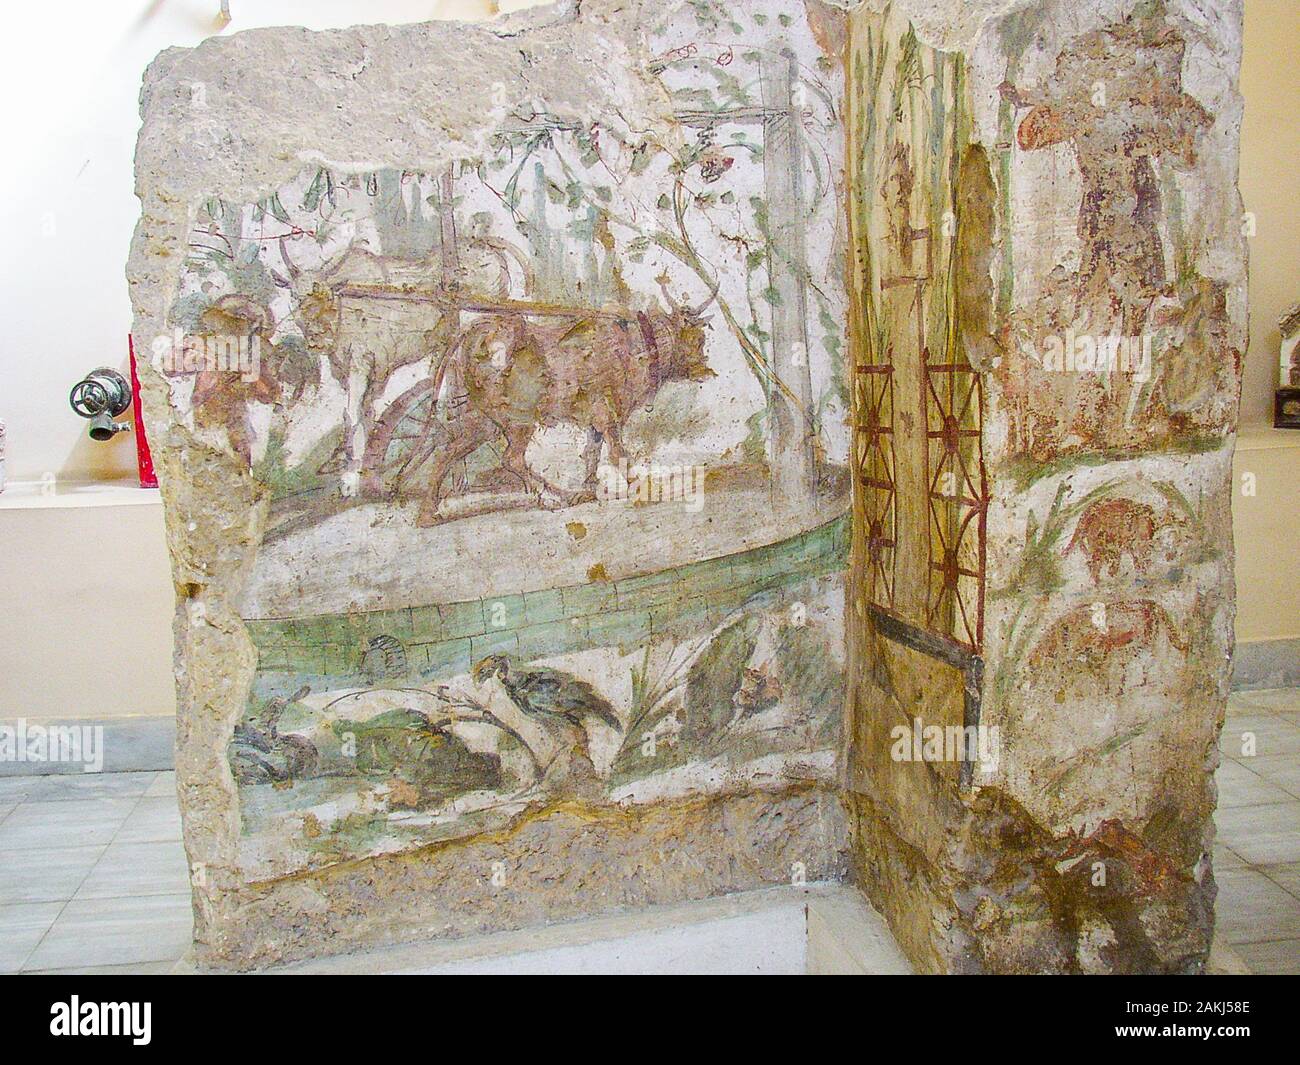 Egitto, Alessandria, Museo greco-romano, dipinto estratto da una tomba di Wardo, una delle necropoli di Alessandria. Foto Stock